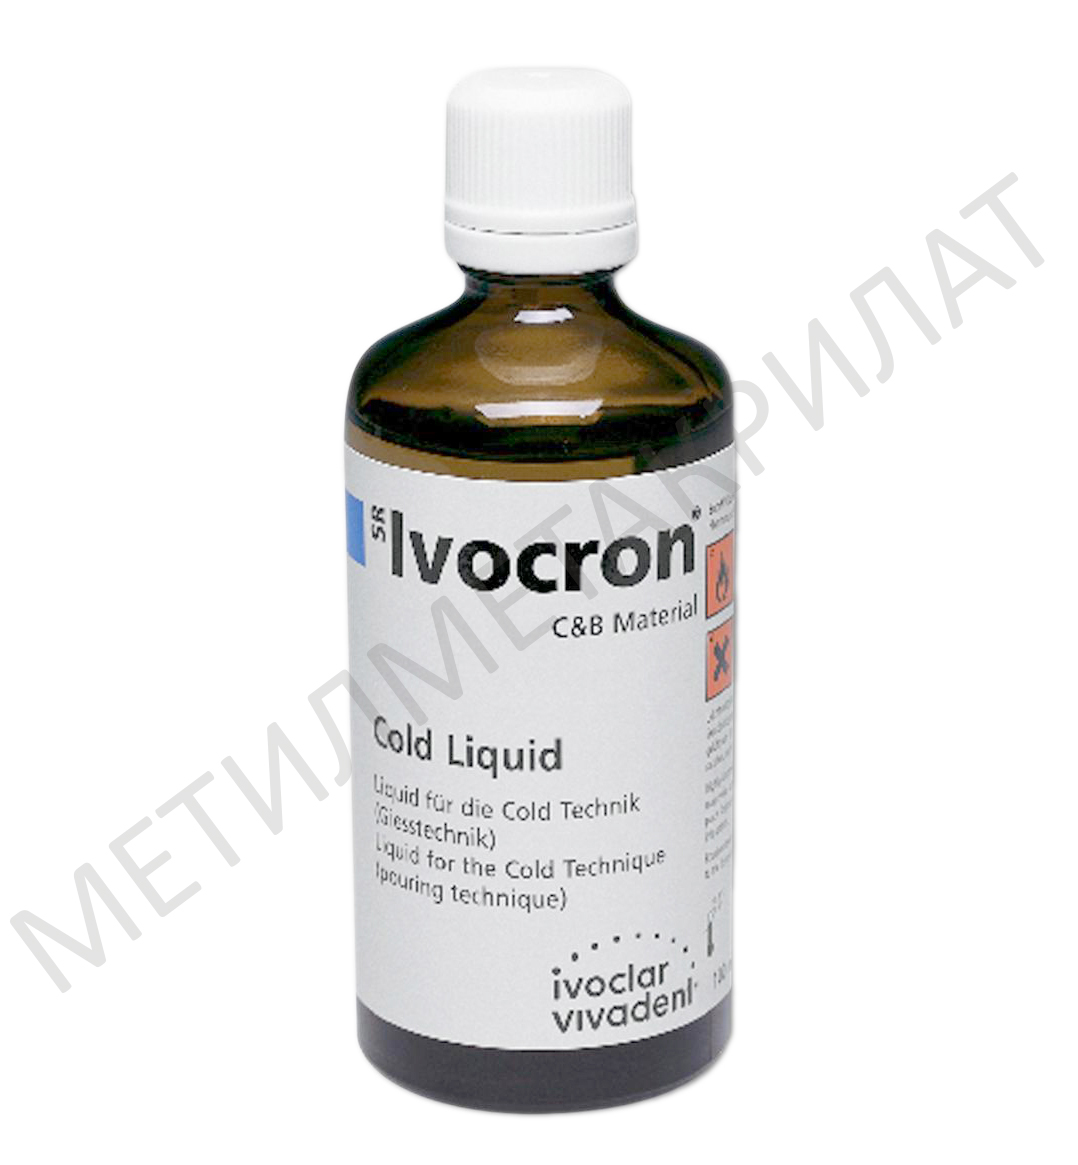 Жидкость SR Ivocron Cold Liquid холодной полимеризации (100 мл) Ivoclar 550080